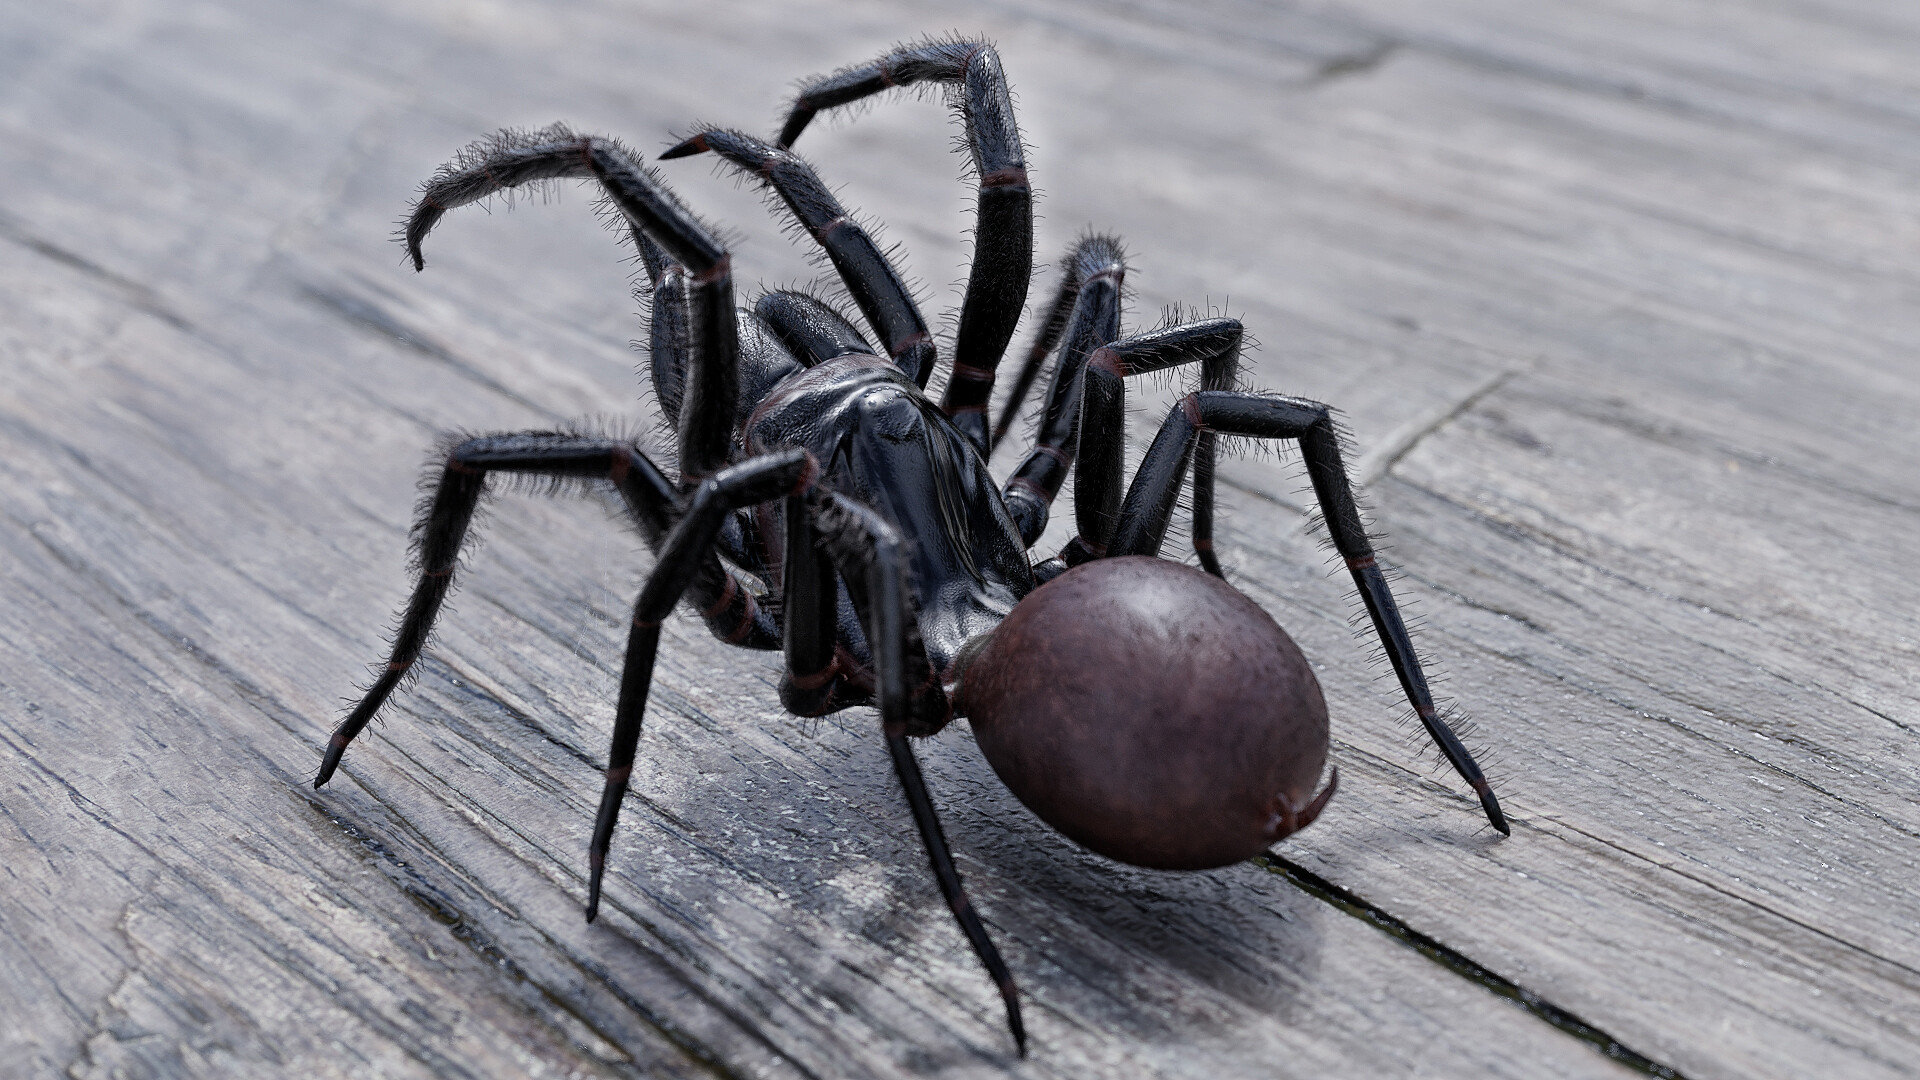 Топ-10 самых опасных пауков в мире